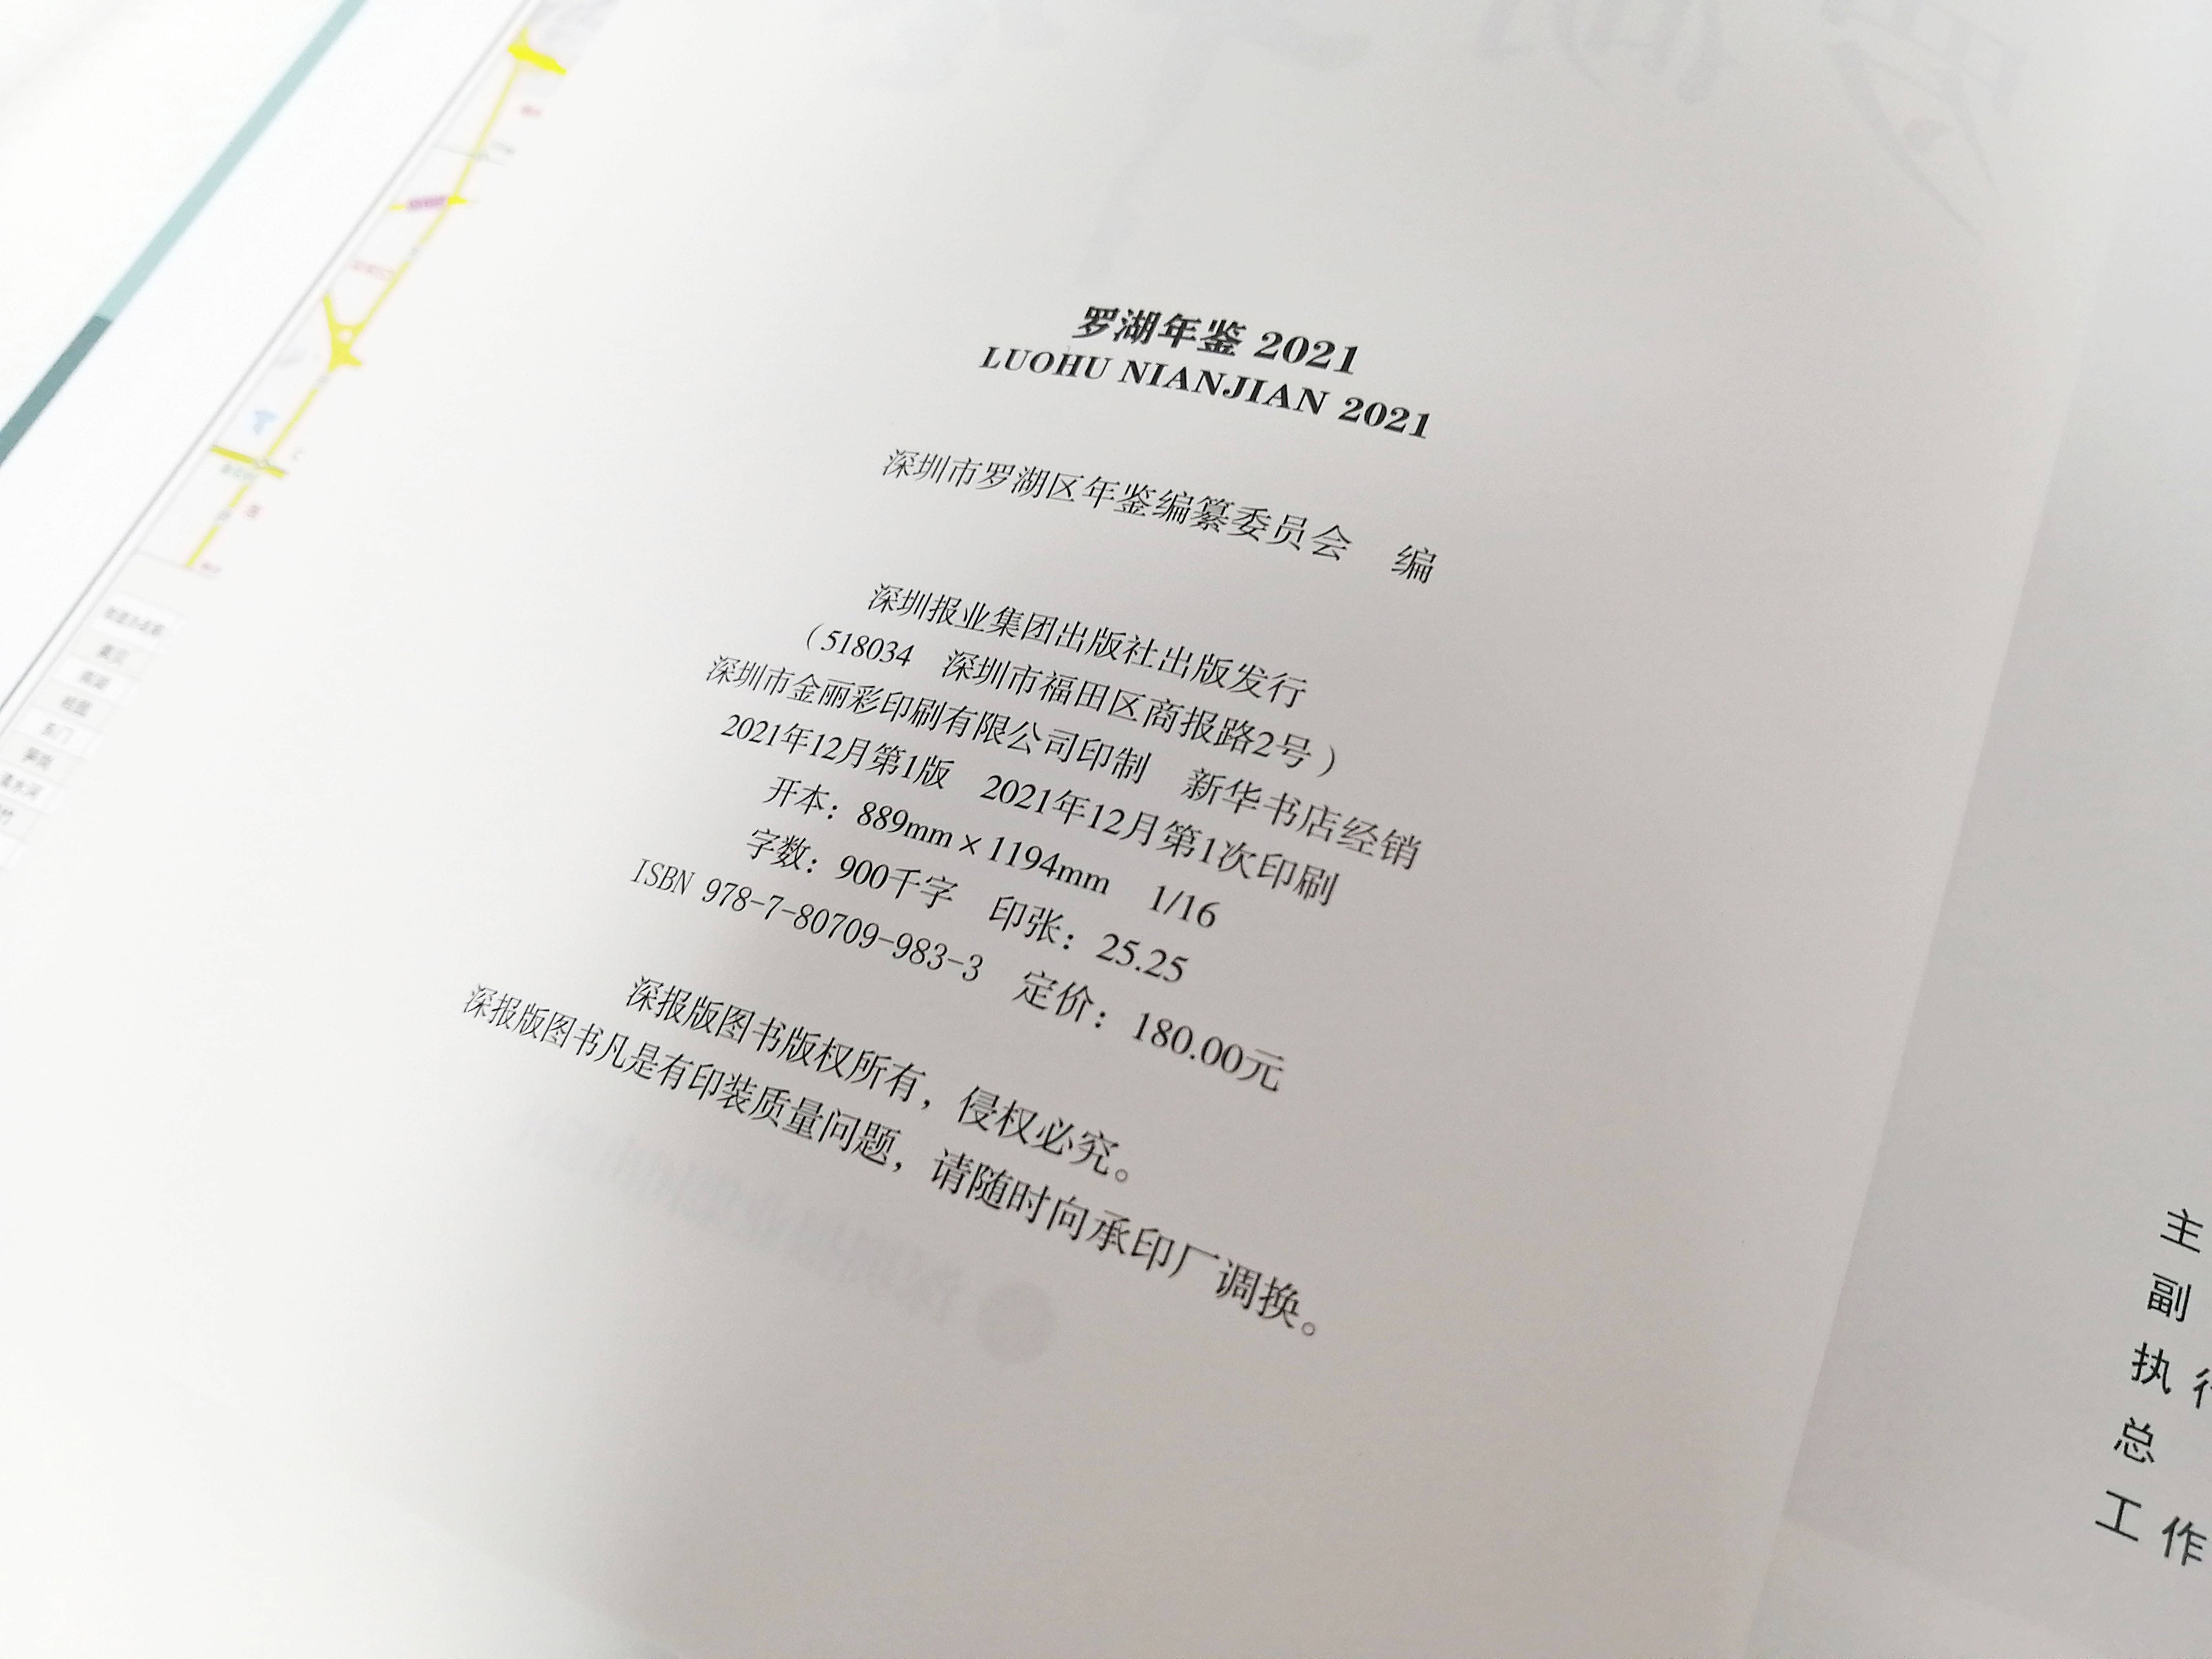 《罗湖年鉴2021》由深圳金丽彩印刷成功印制